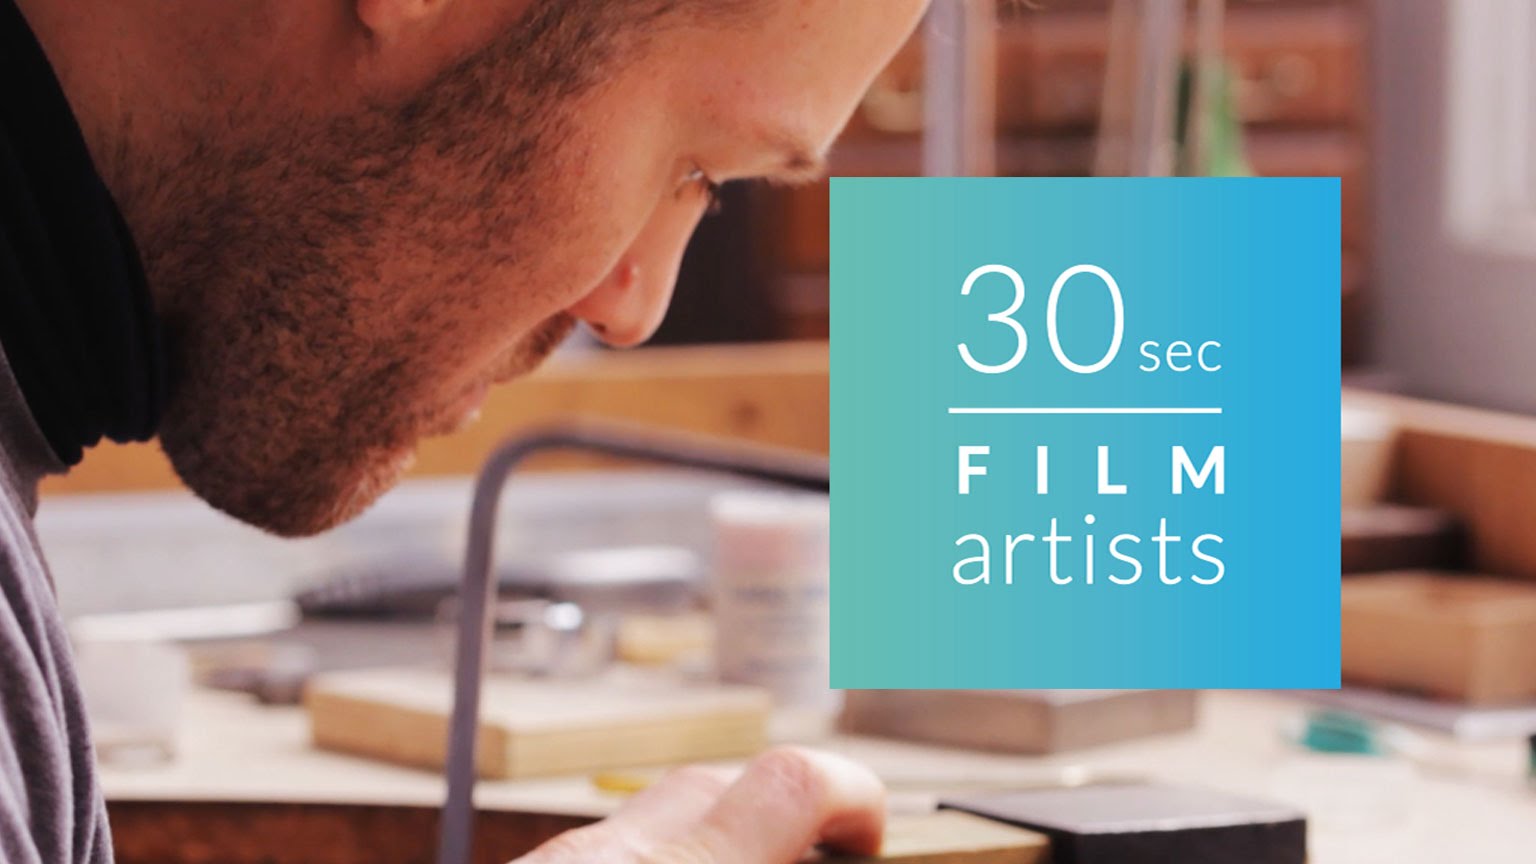 30sec film artists Vol.21 – Micah Adams